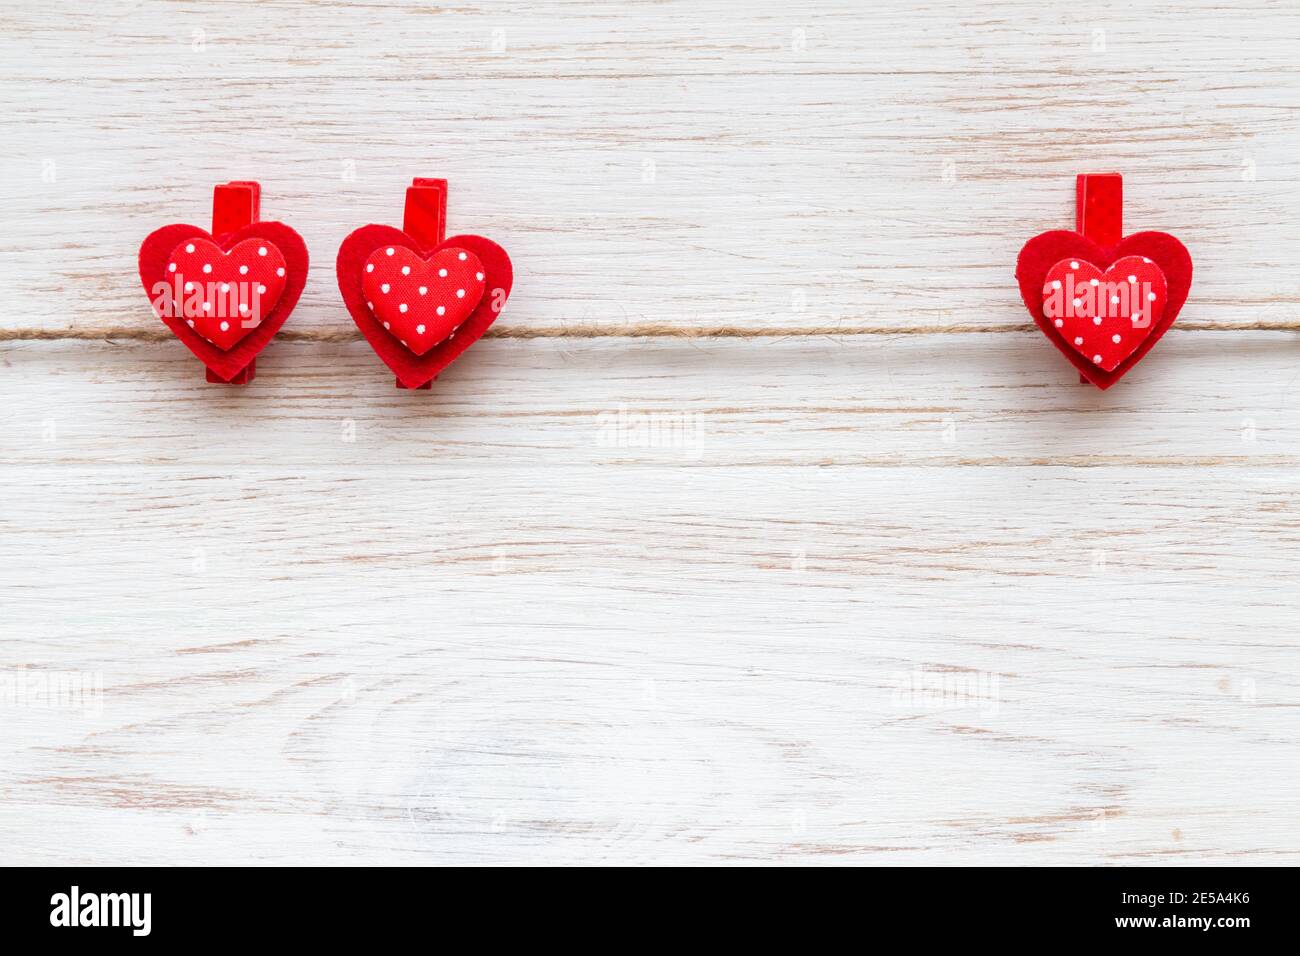 Zwei und ein rote Herzen mit Tupfen auf Wäscheklammern auf rustikal weiß lackiertem Holzbrett. Valentinstag Hintergrund mit roten Herzen. Speicherplatz kopieren Stockfoto